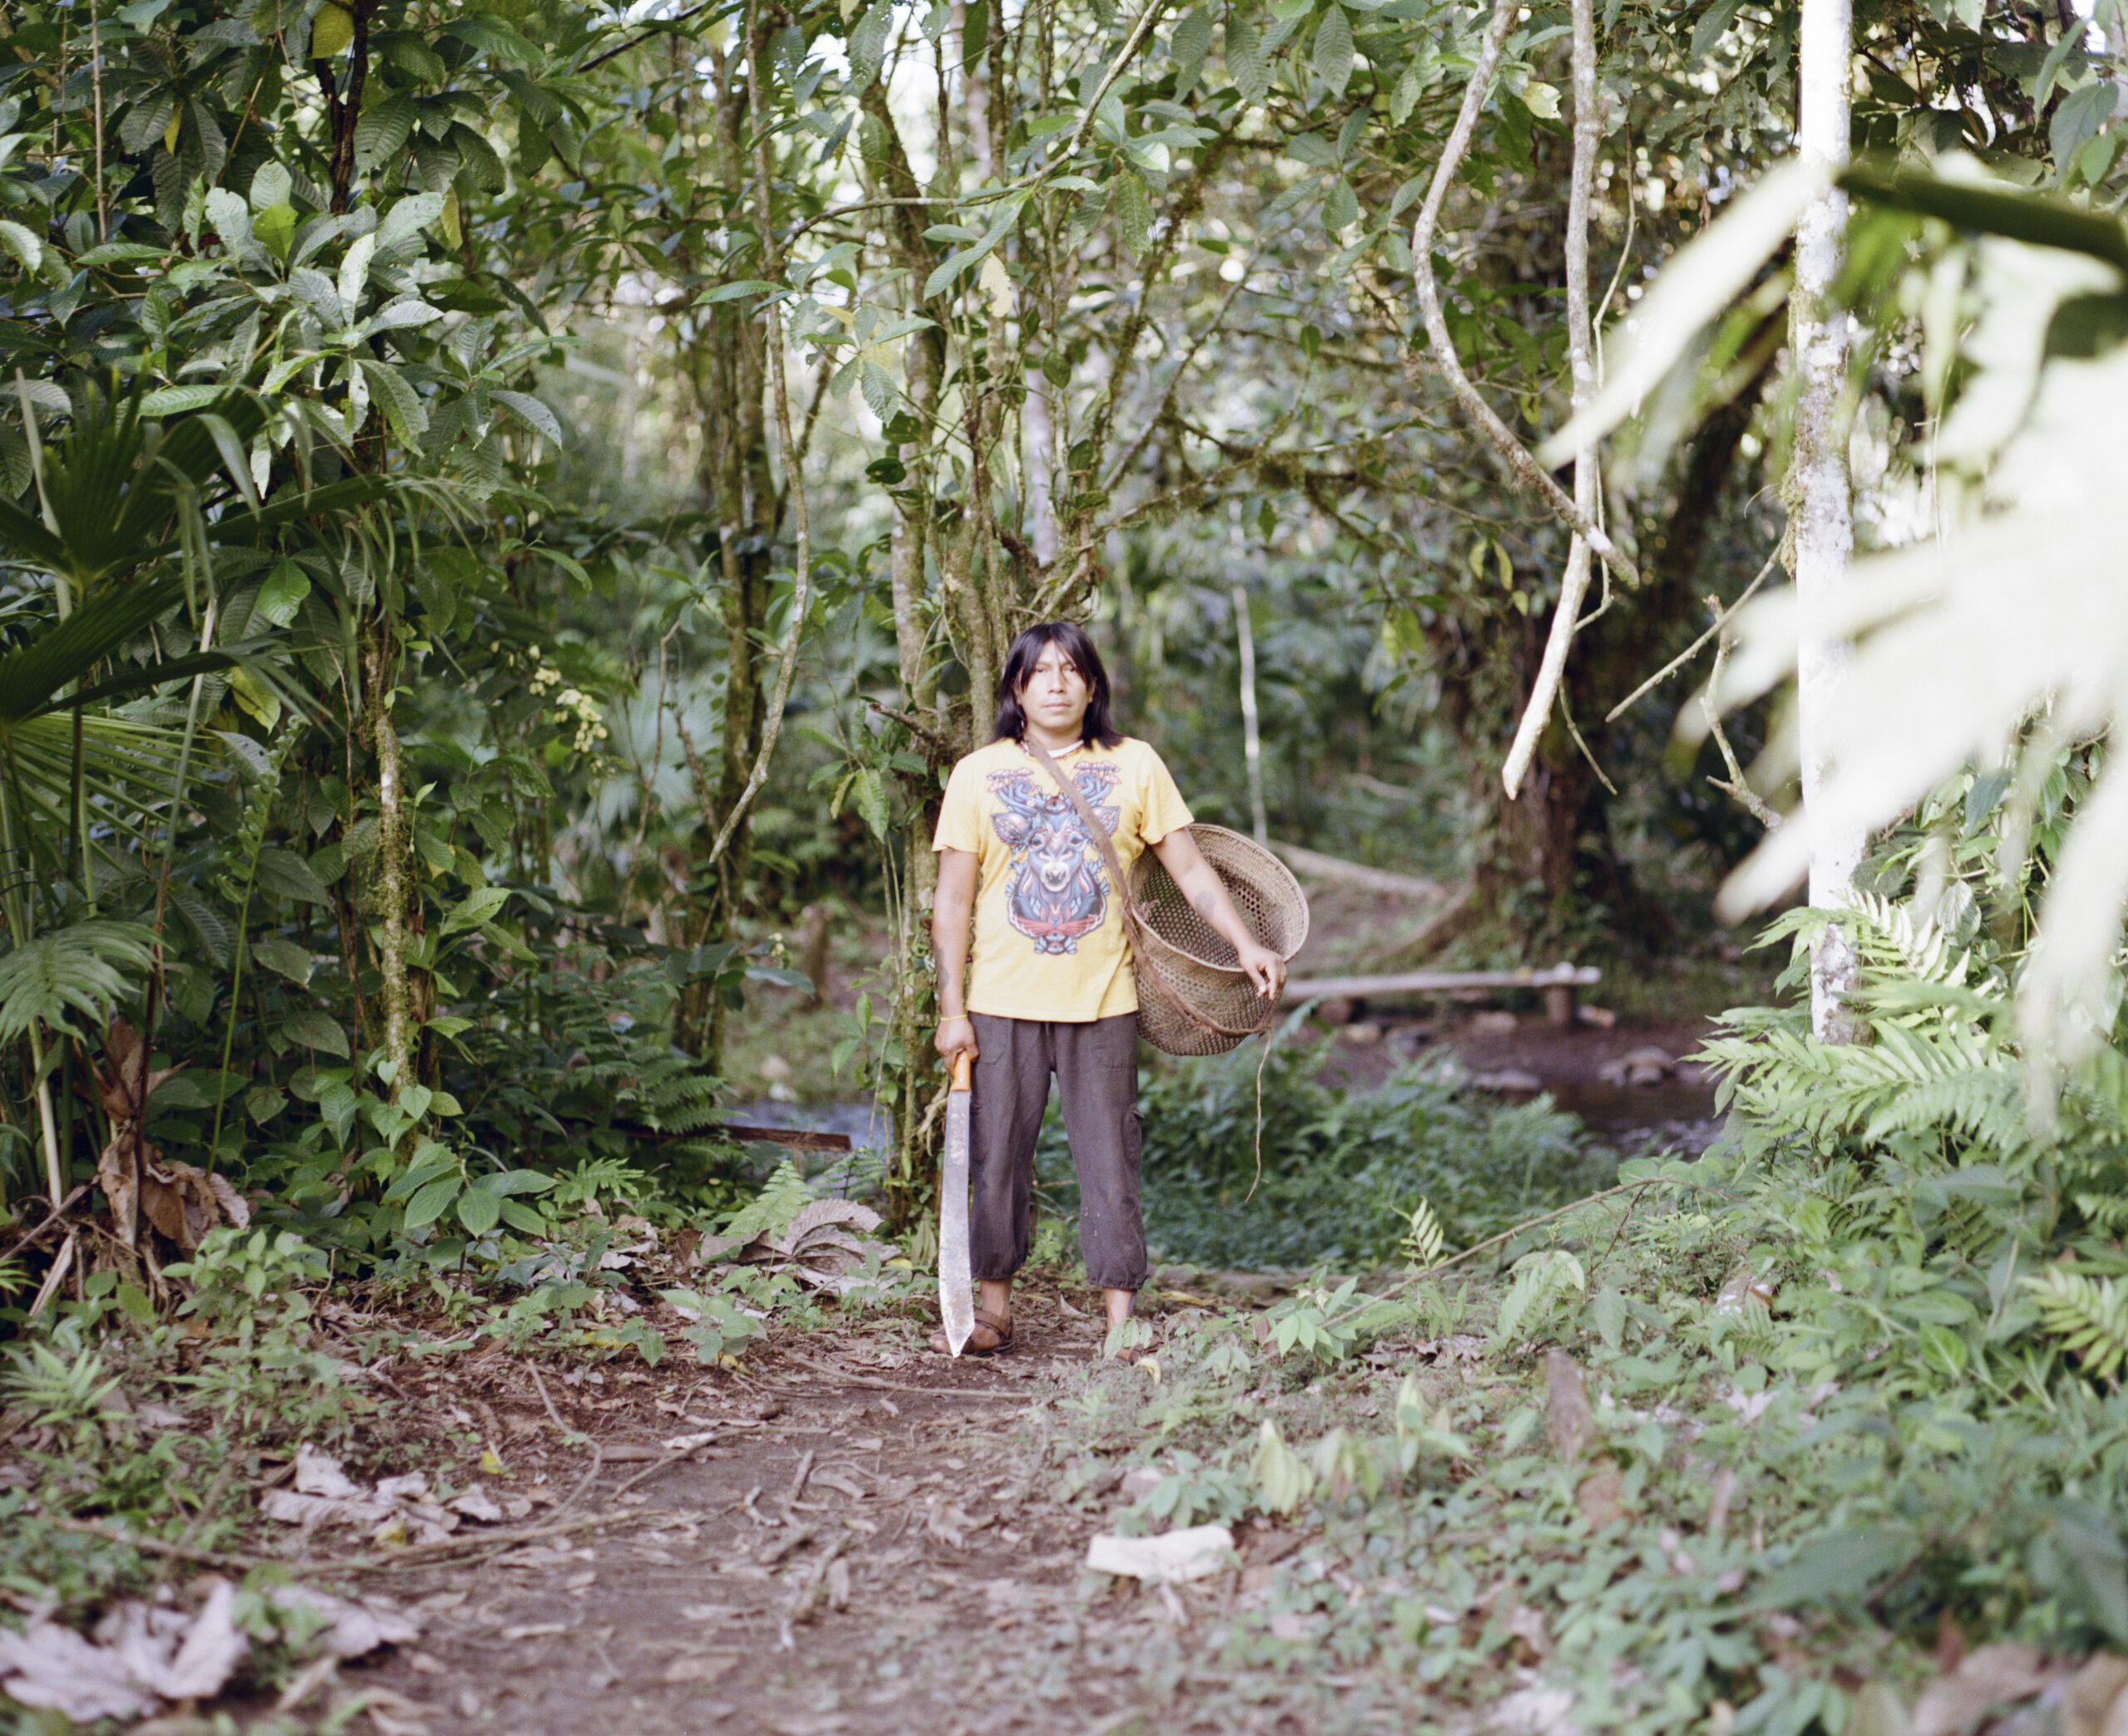 Yanda Montahuano Ushigua de pie a lo largo de un camino, sosteniendo una cesta y un machete, entre la selva en Itia Mamá Minga.